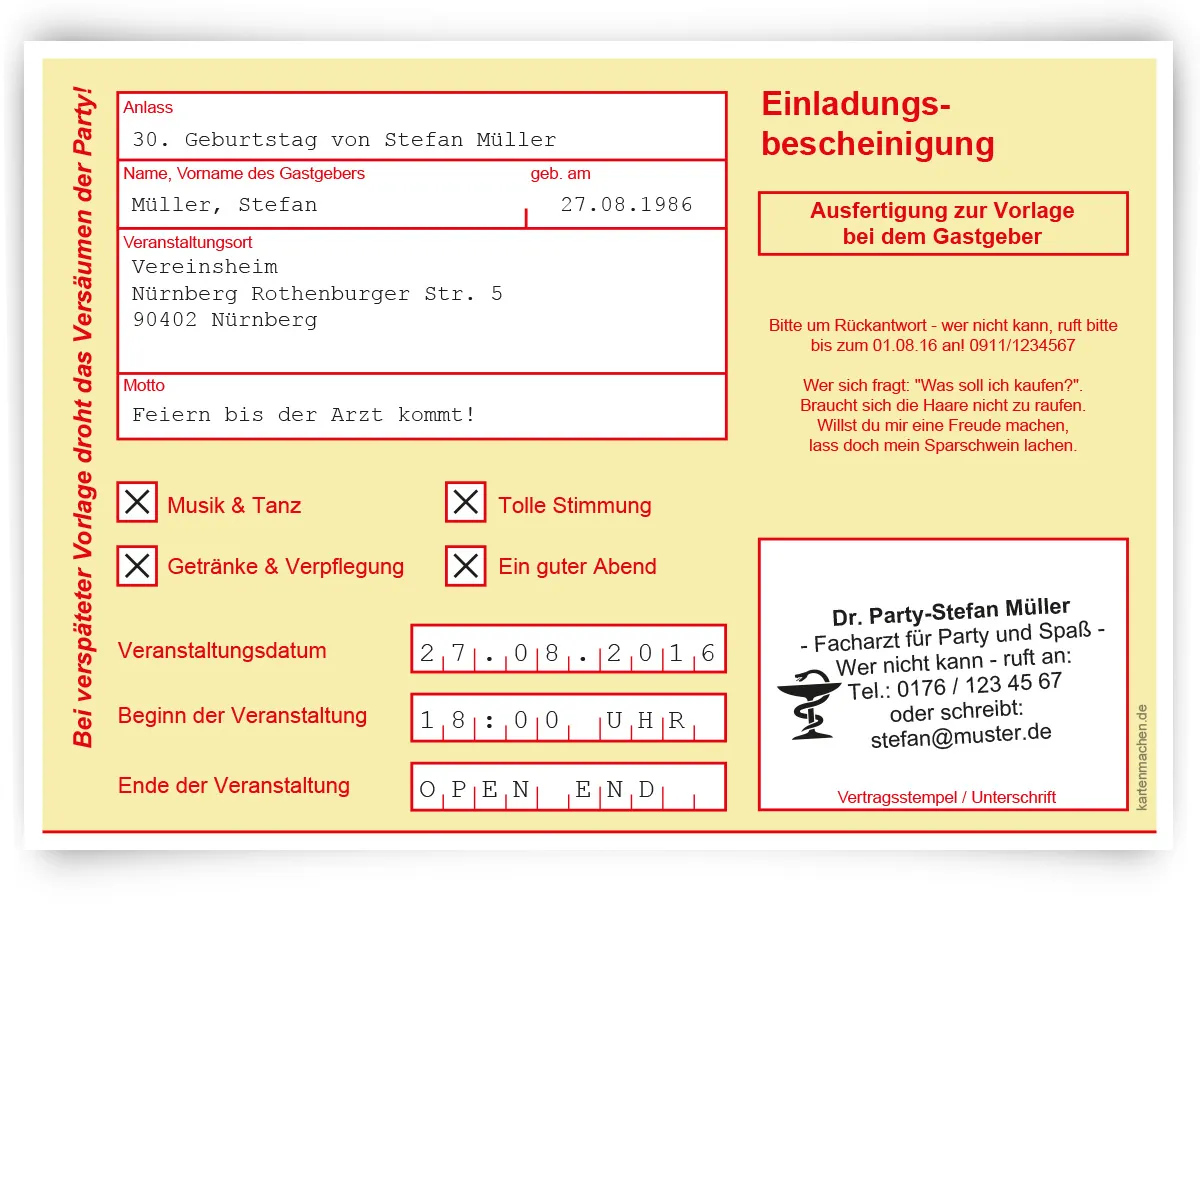 Einladungskarte als Krankschreibung - Gelb